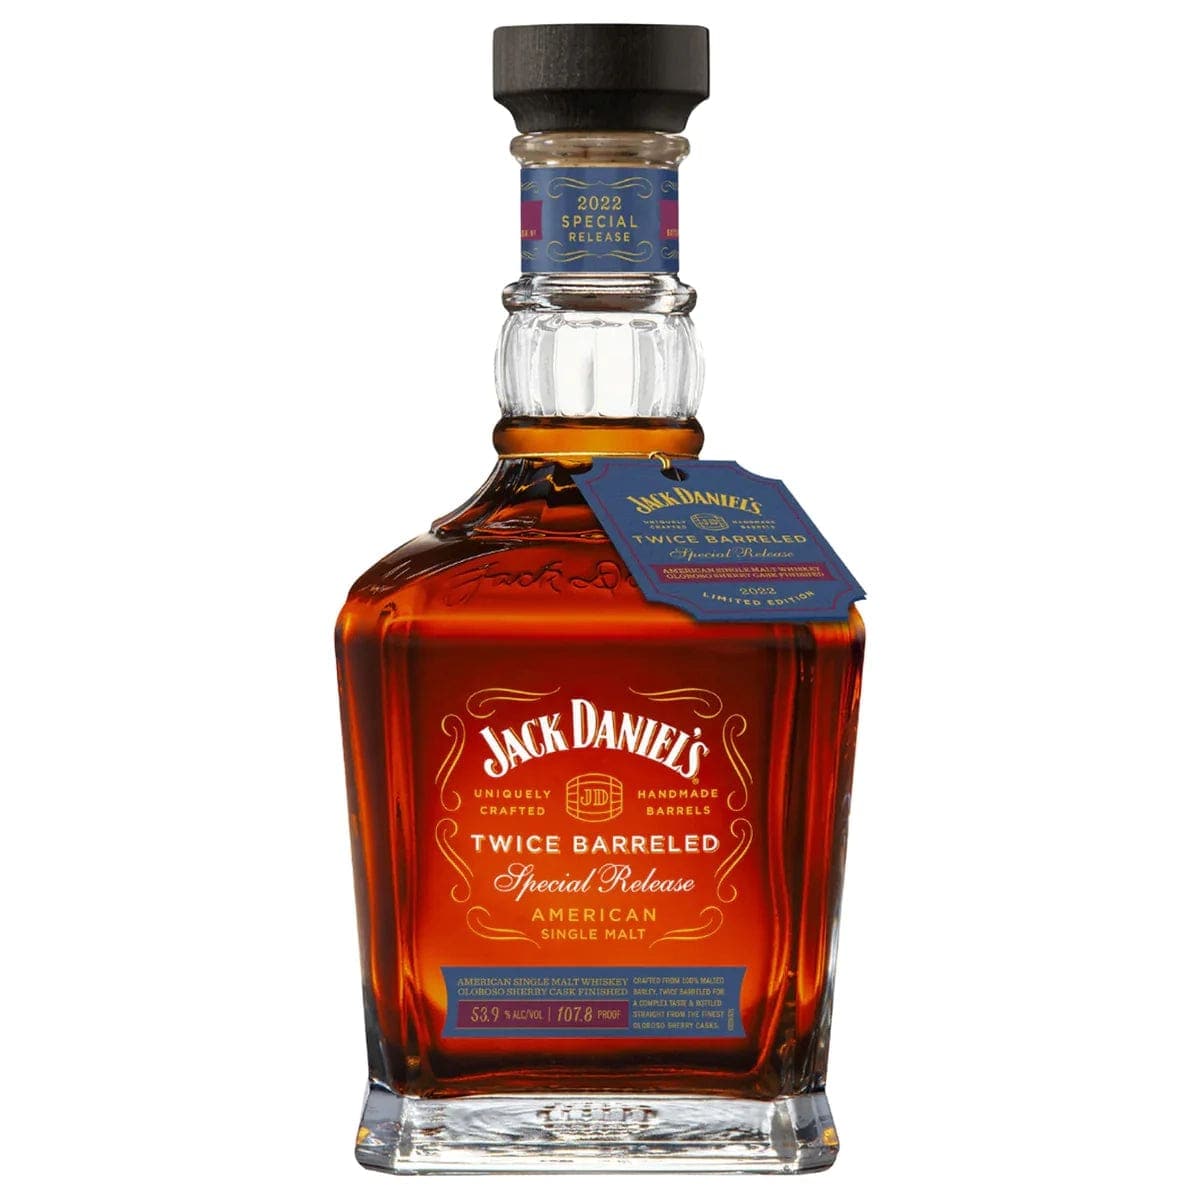 Jack Daniels Twice Barreled 2022 Special Release - Barbank